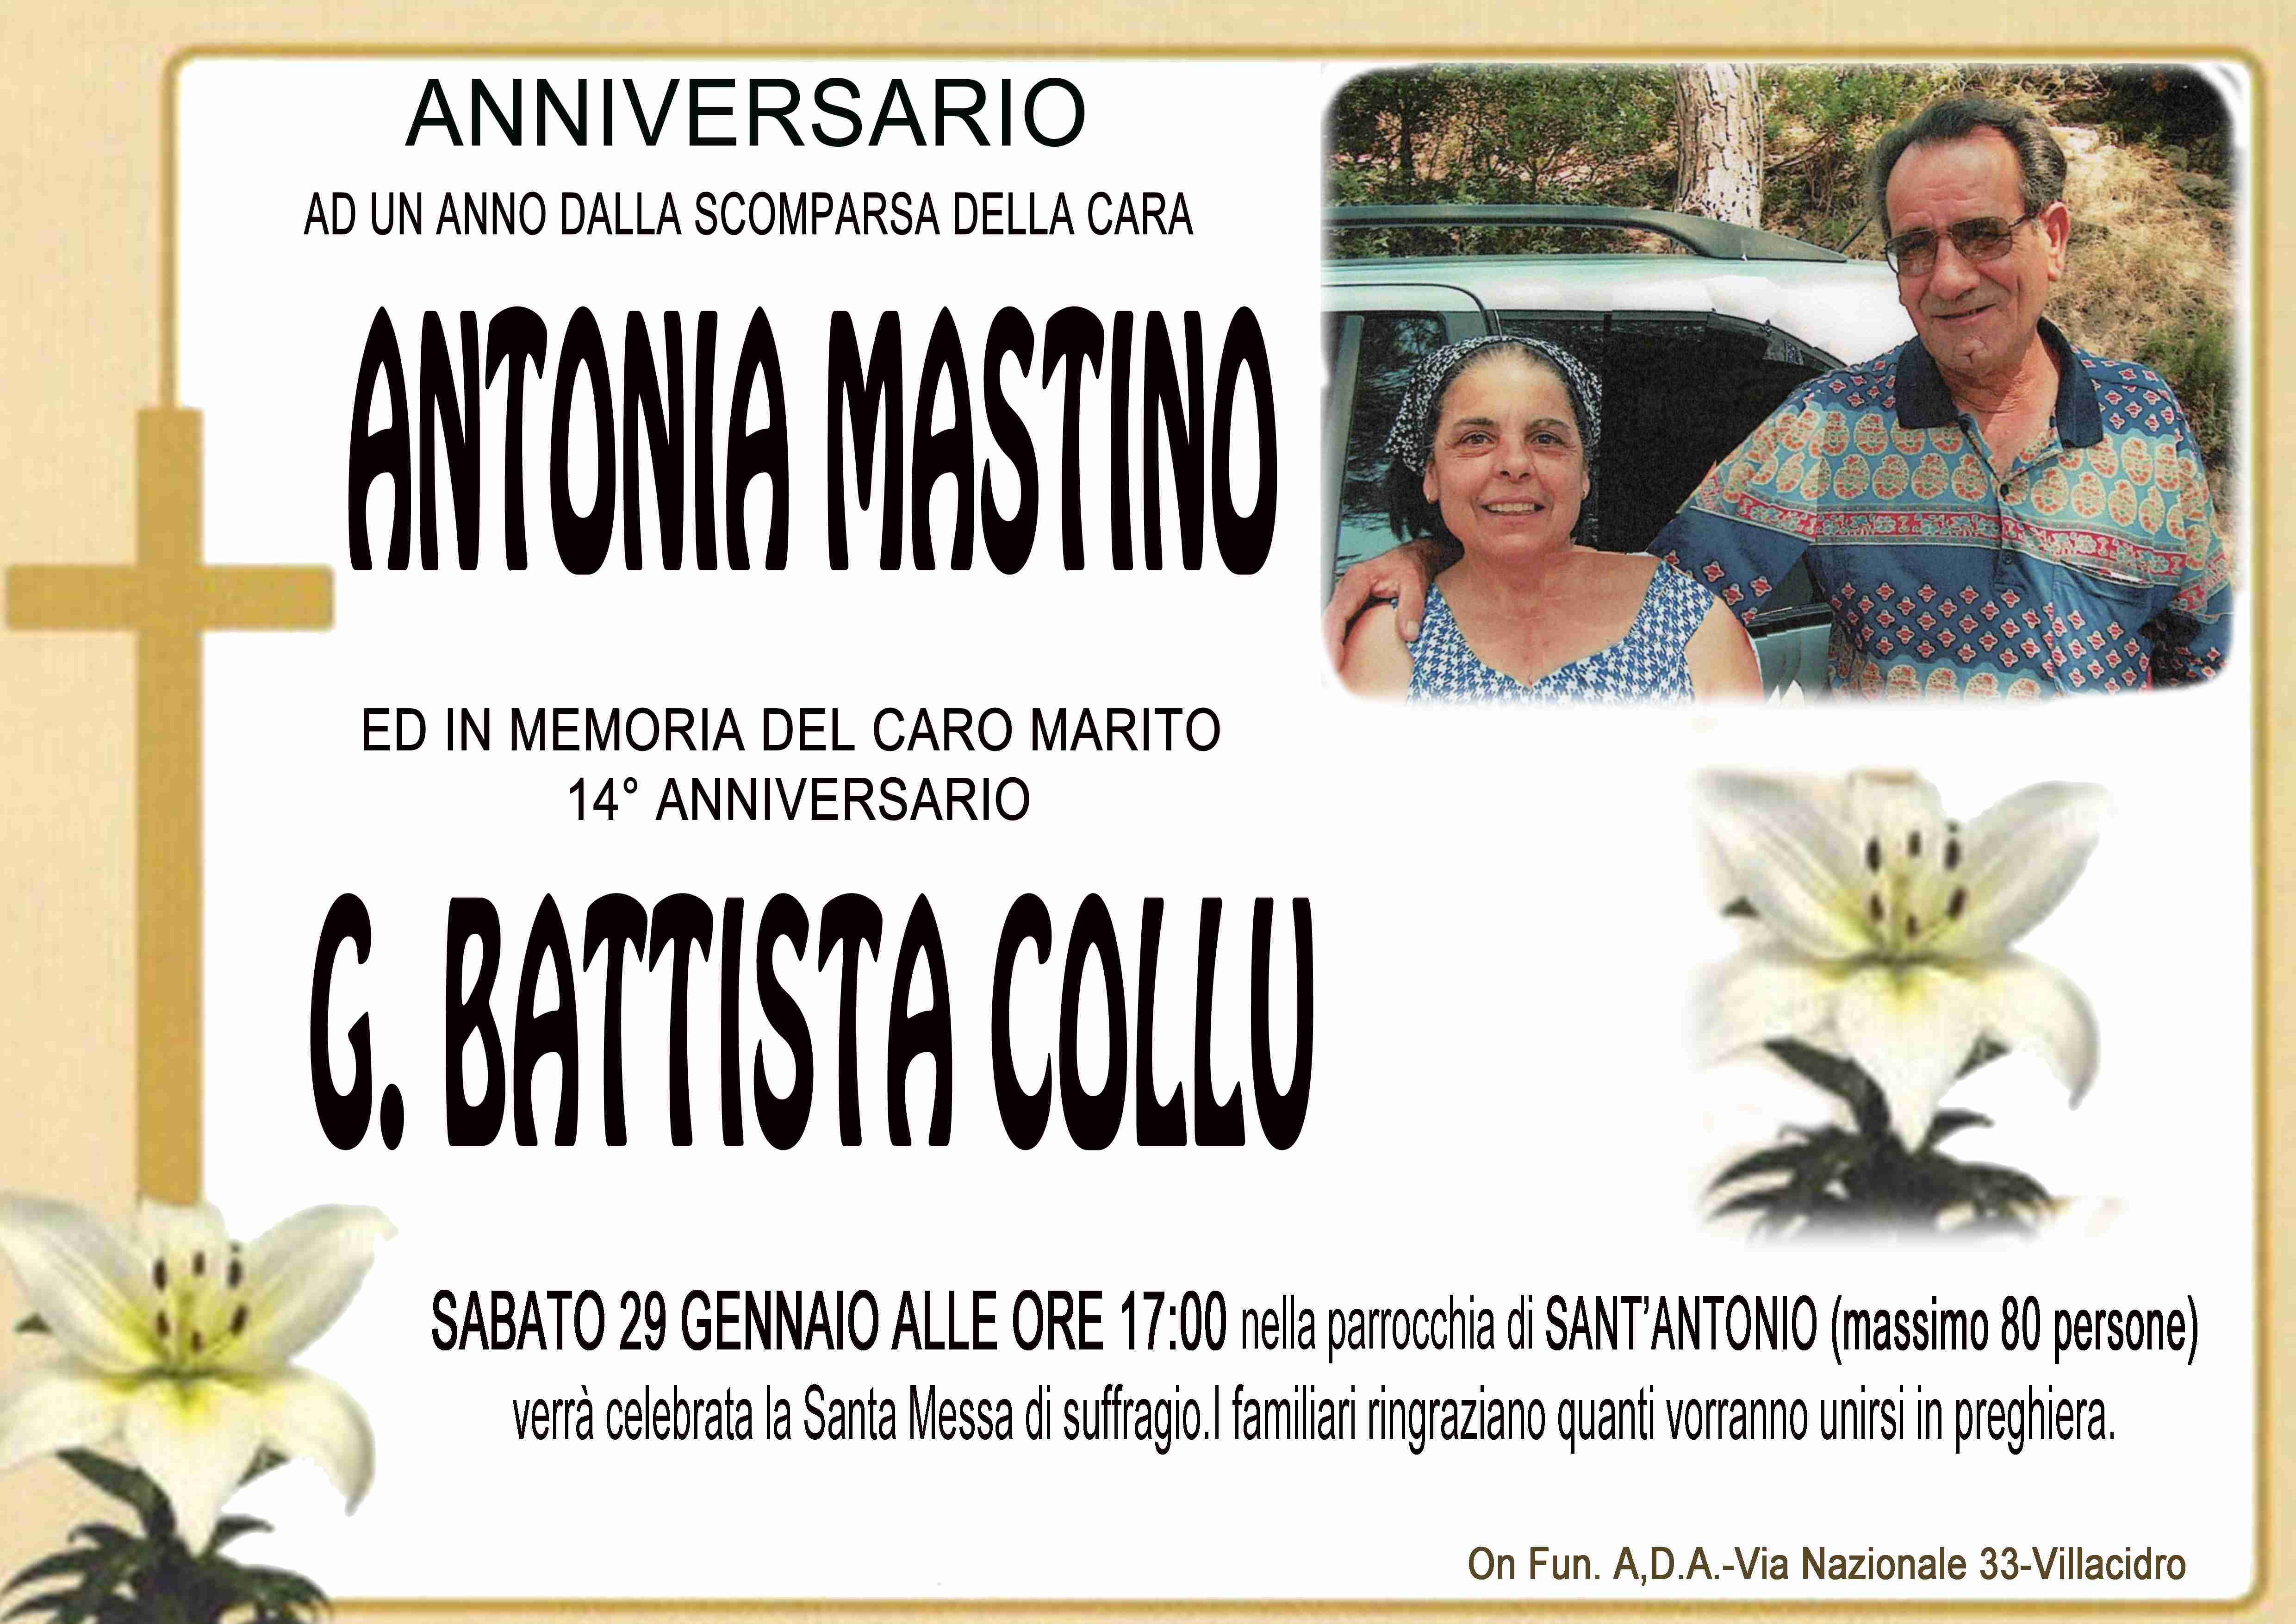 Antonia Mastino e G. Battista Collu